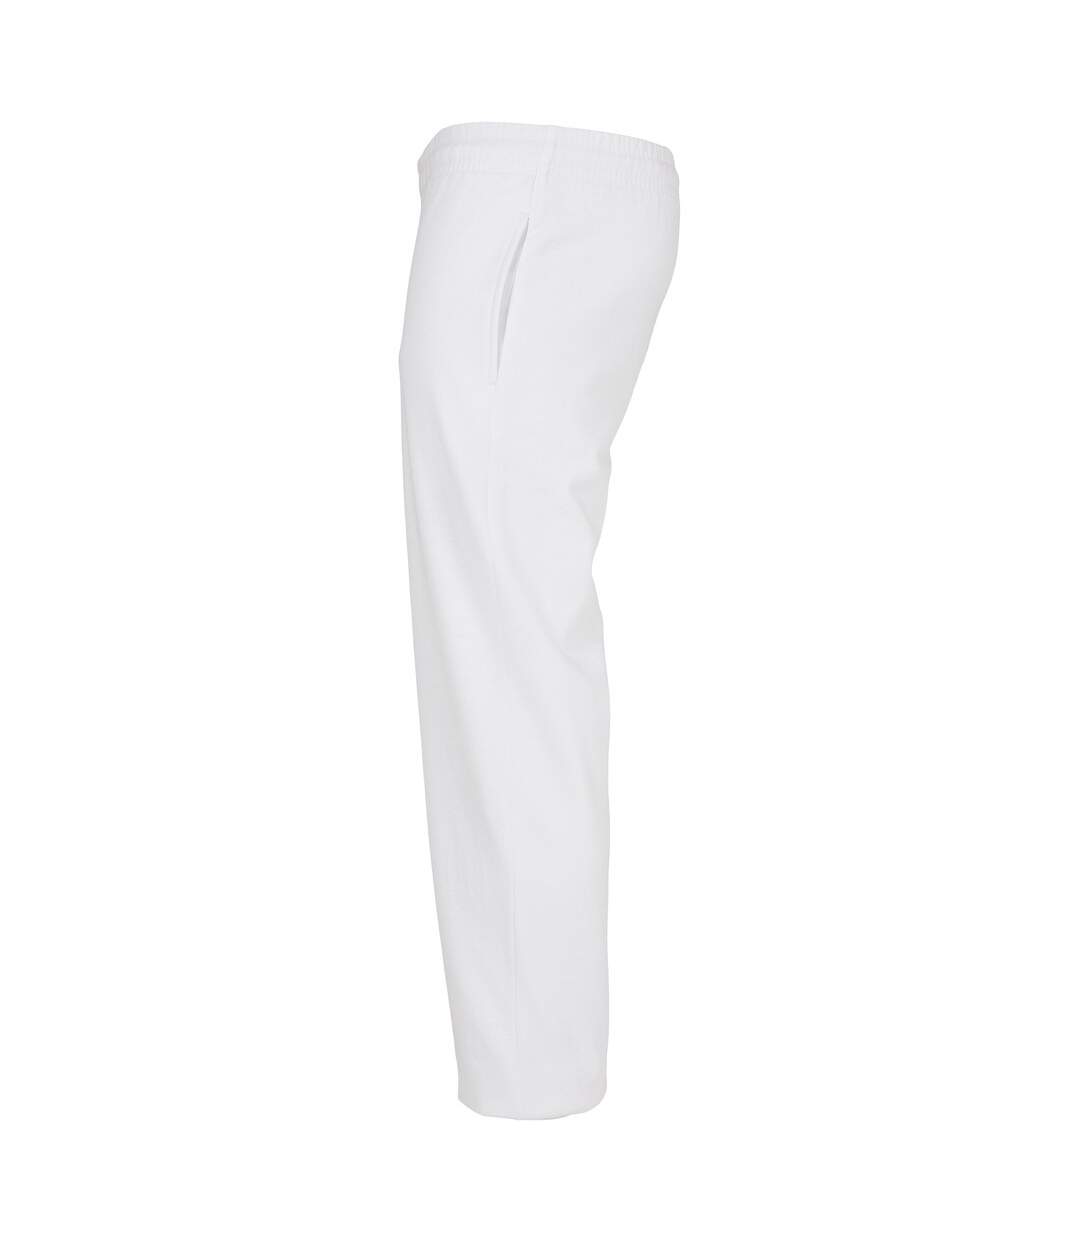 Build Your Brand Pantalon de jogging basique unisexe pour adultes (Blanc) - UTRW7994